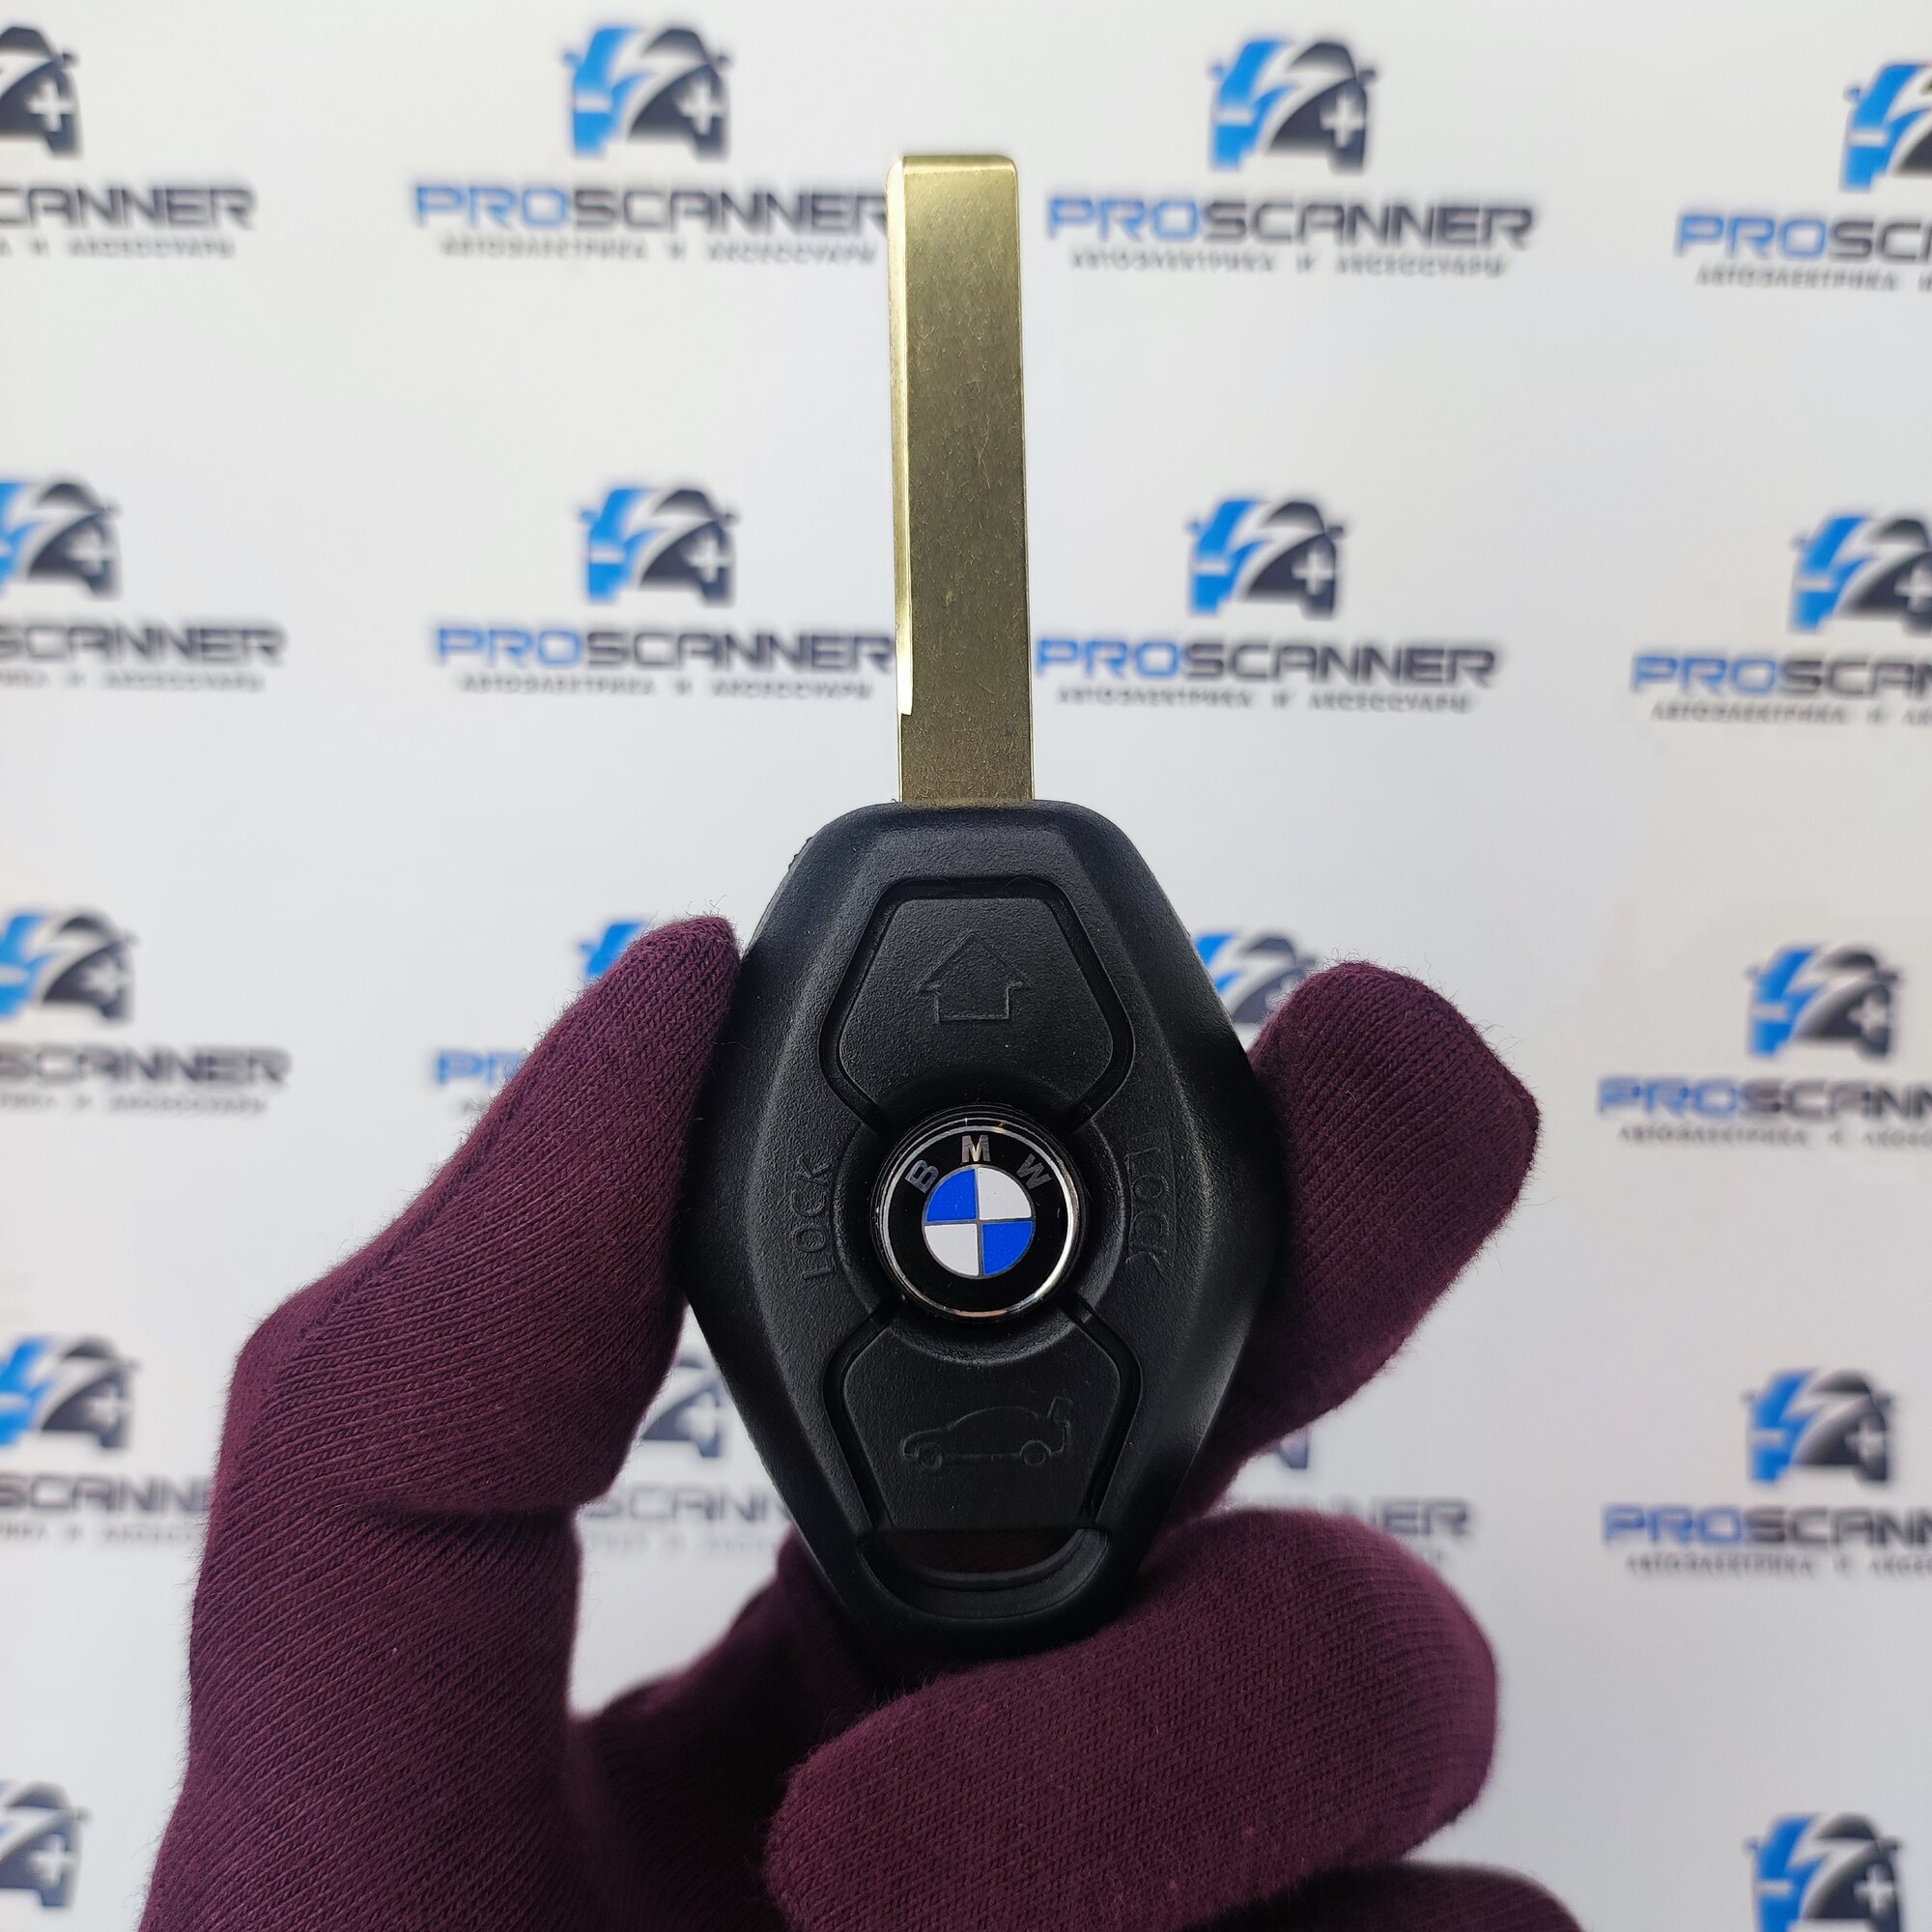 Корпус ключа зажигания для БМВ BMW E46 E53 E39 E60 E65 X3 X5 M5 - 1 штука (3х кнопочный ключ, лезвие HU92)